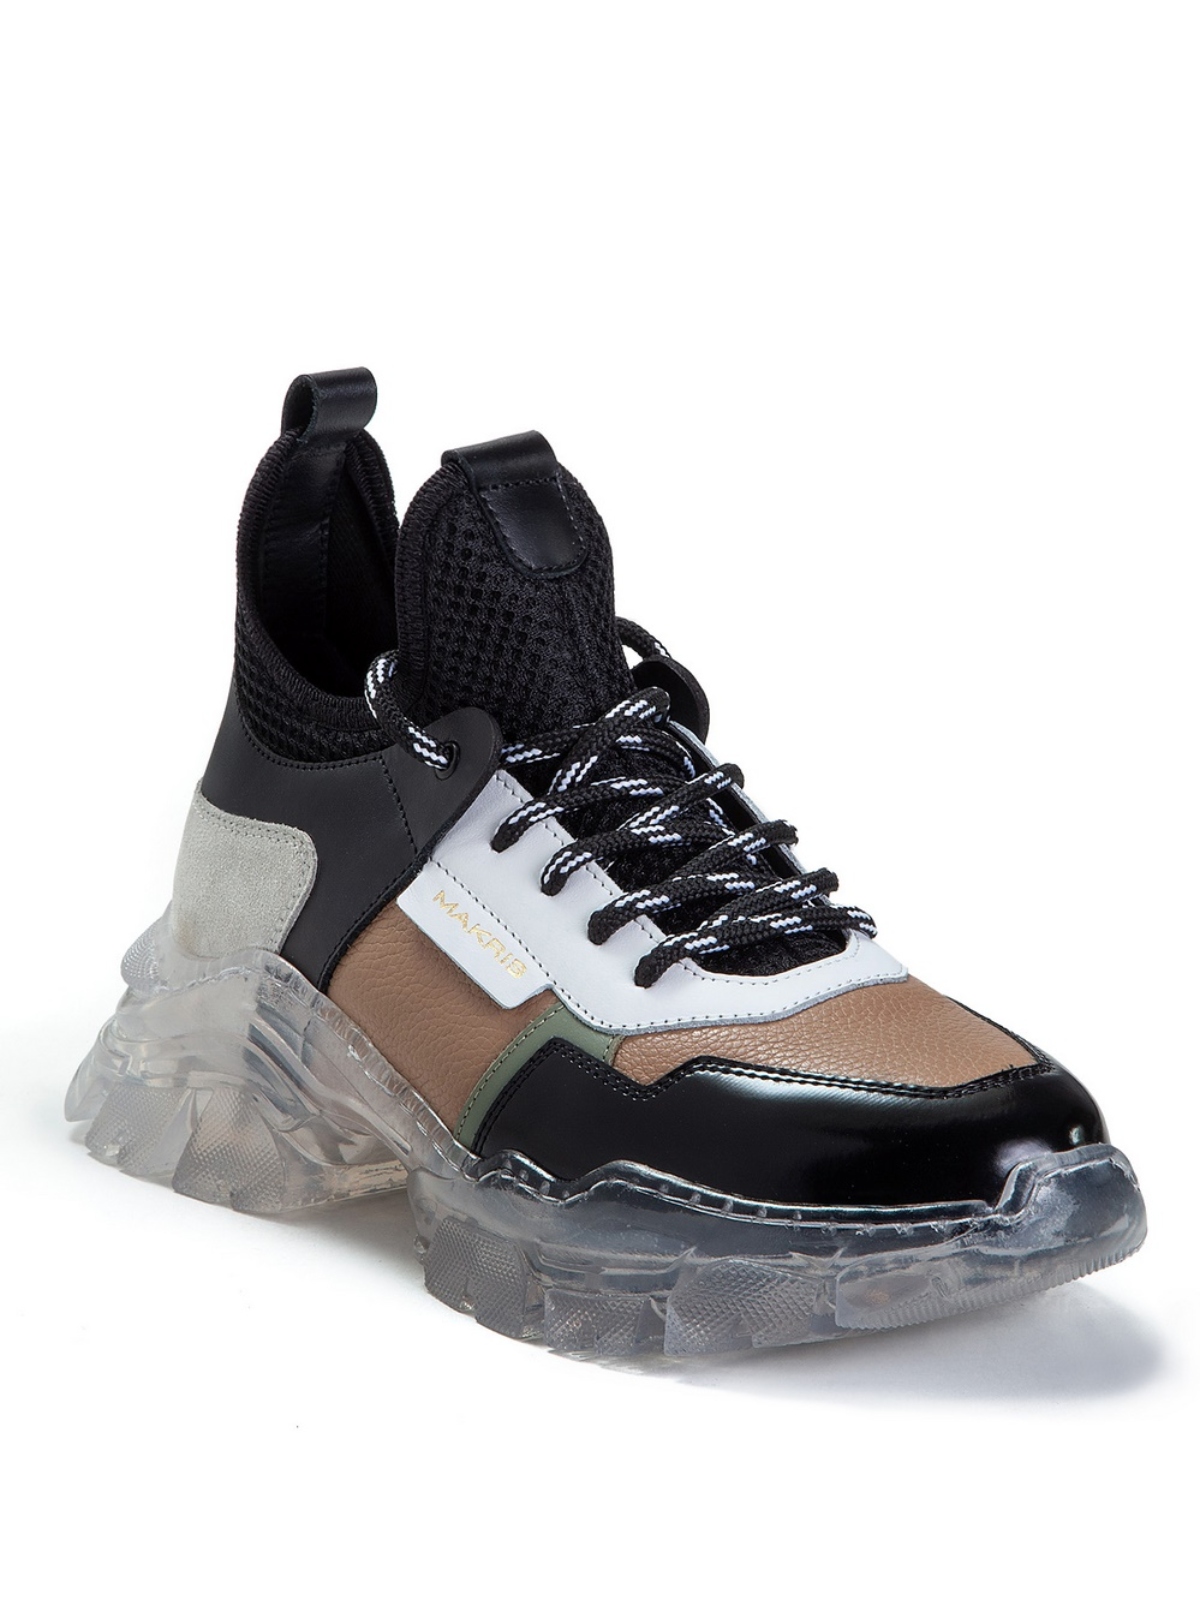 Makris | Multicolour transparent sole sneakers